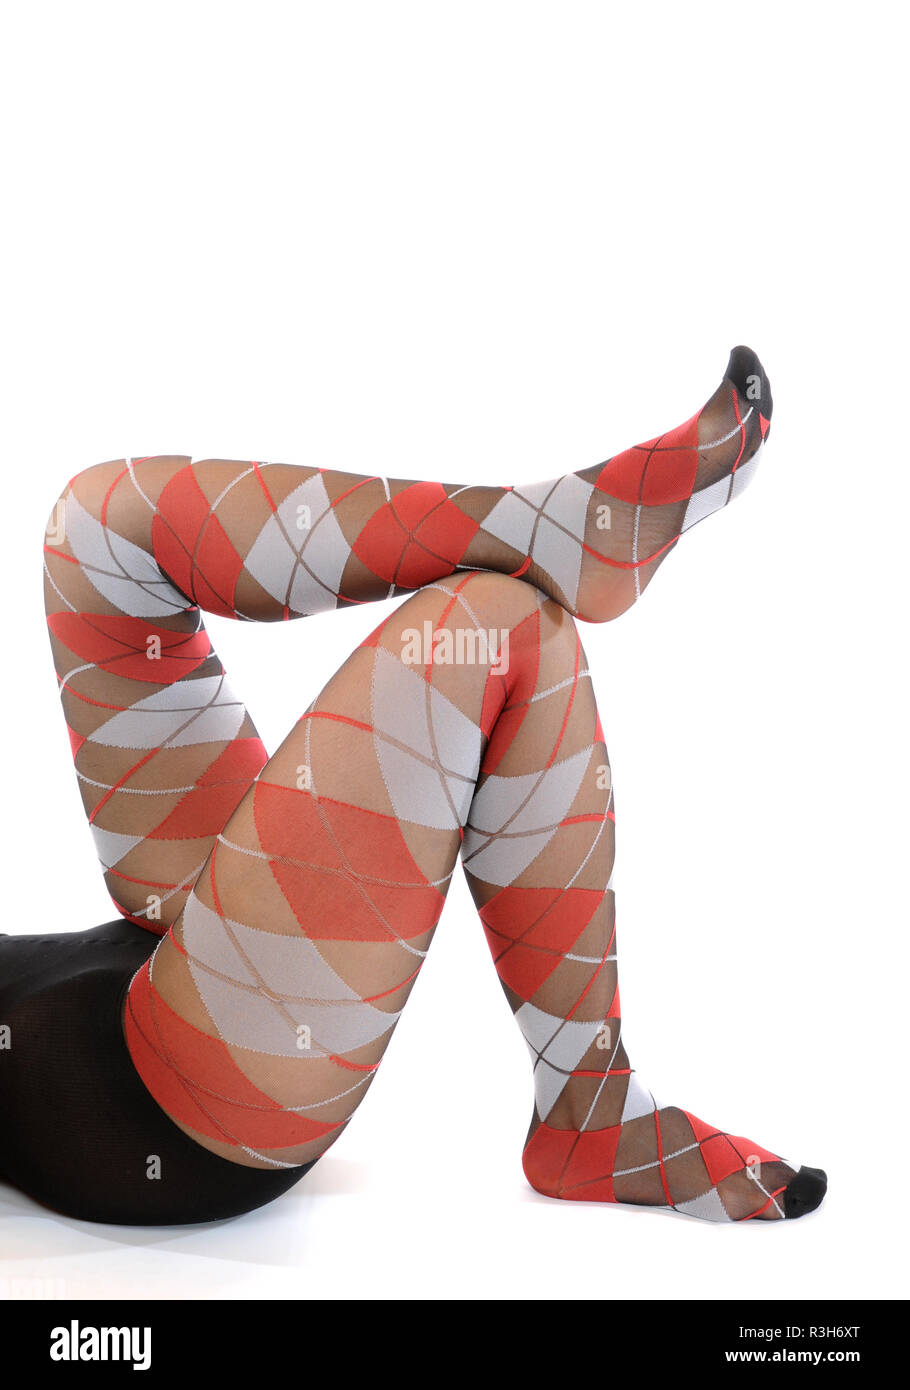 Bunte Strumpfhosen/lustige Beine auf Weiß Stockfotografie - Alamy